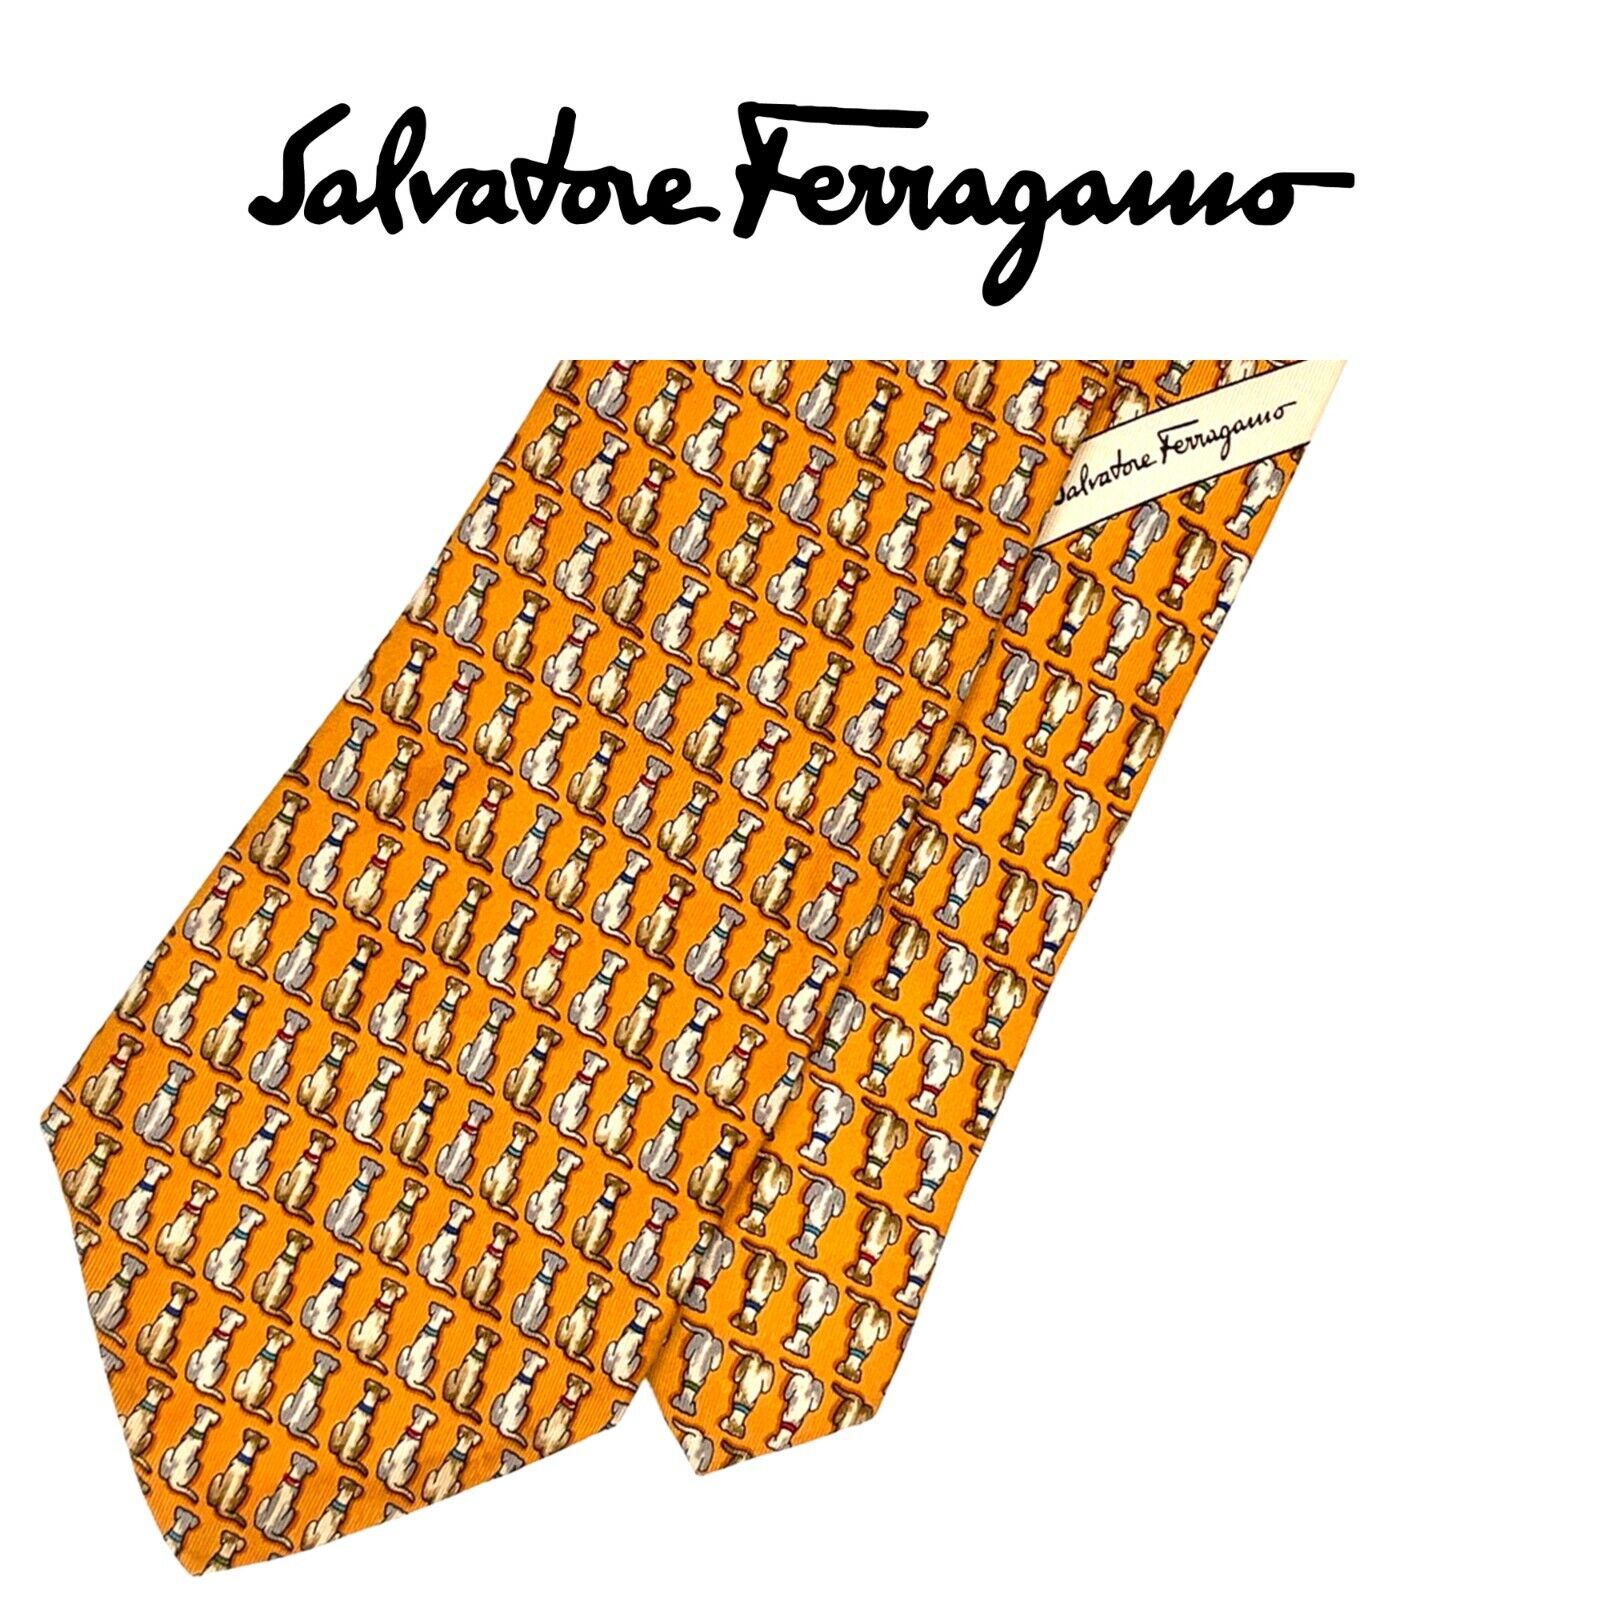 Salvatore Ferragamo Gold Tie - Brown Grey Micro Dogs Pattern Italy Silk Necktie